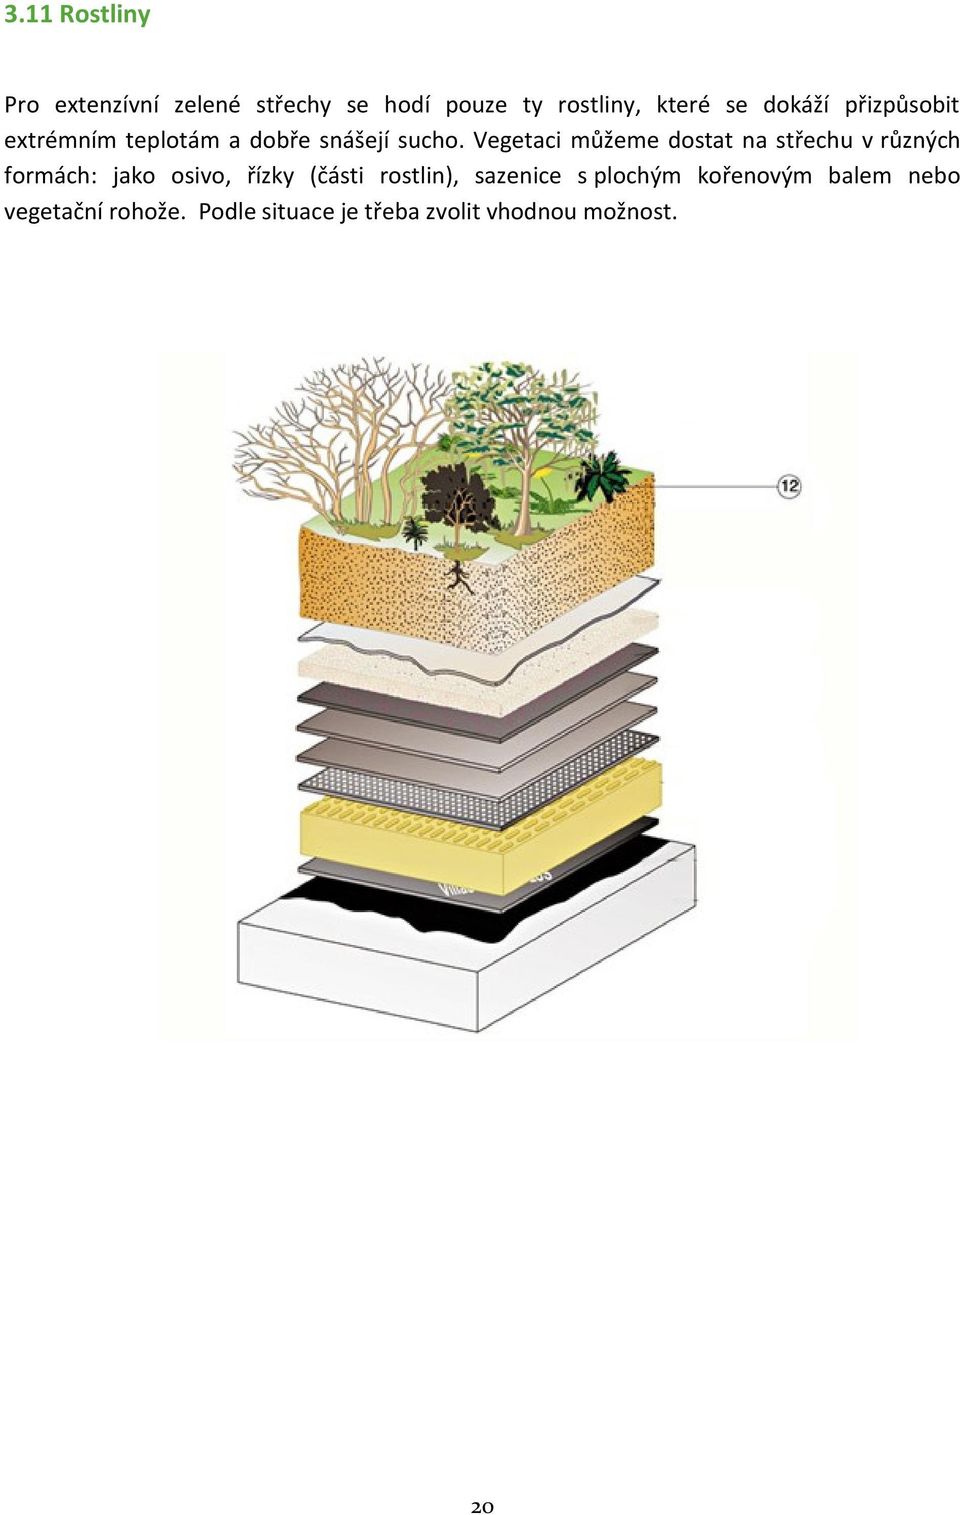 Vegetaci můžeme dostat na střechu v různých formách: jako osivo, řízky (části